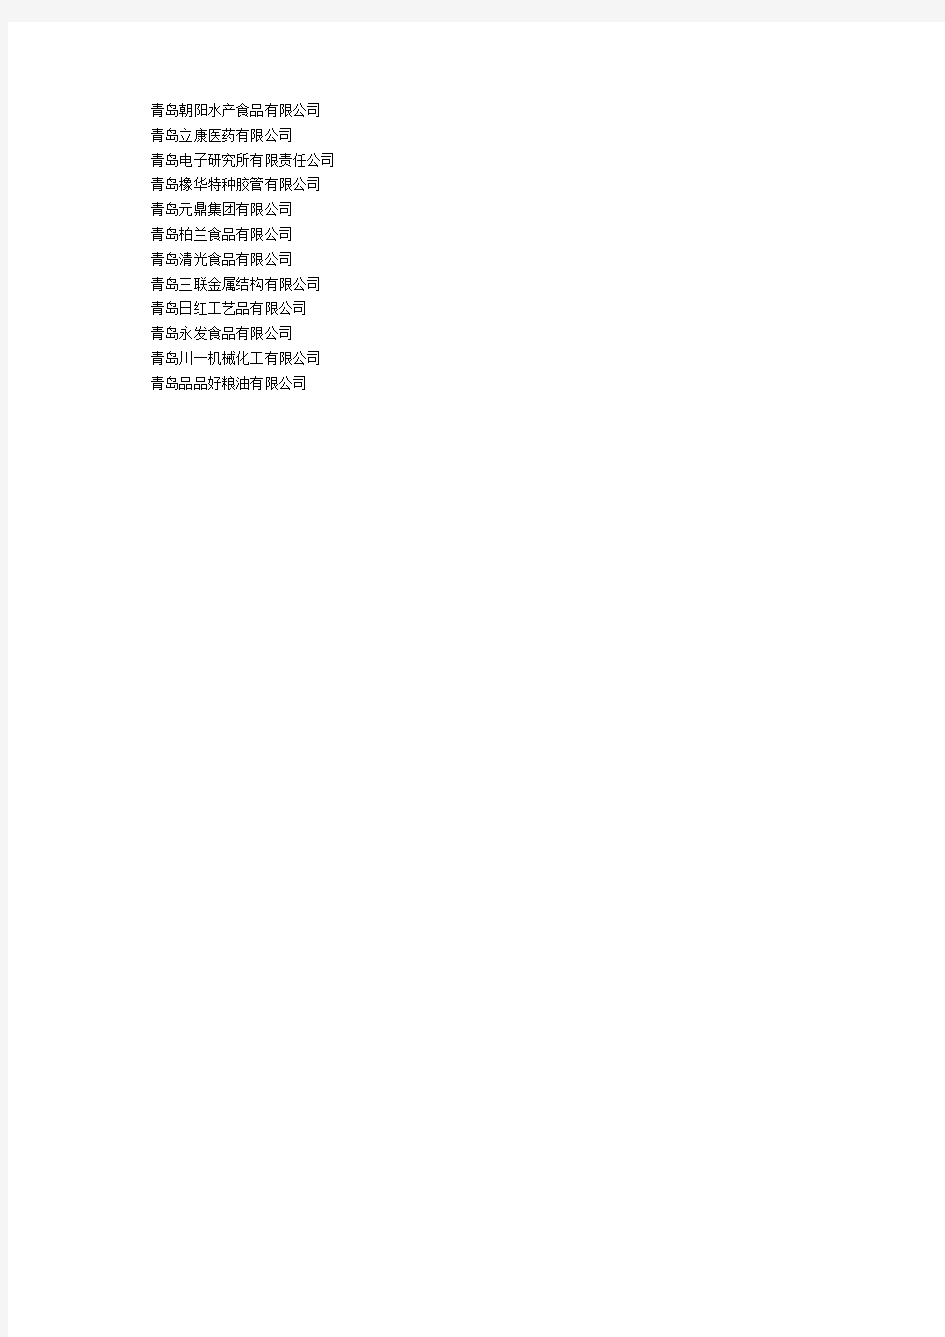 青岛市信用评级企业名单.doc